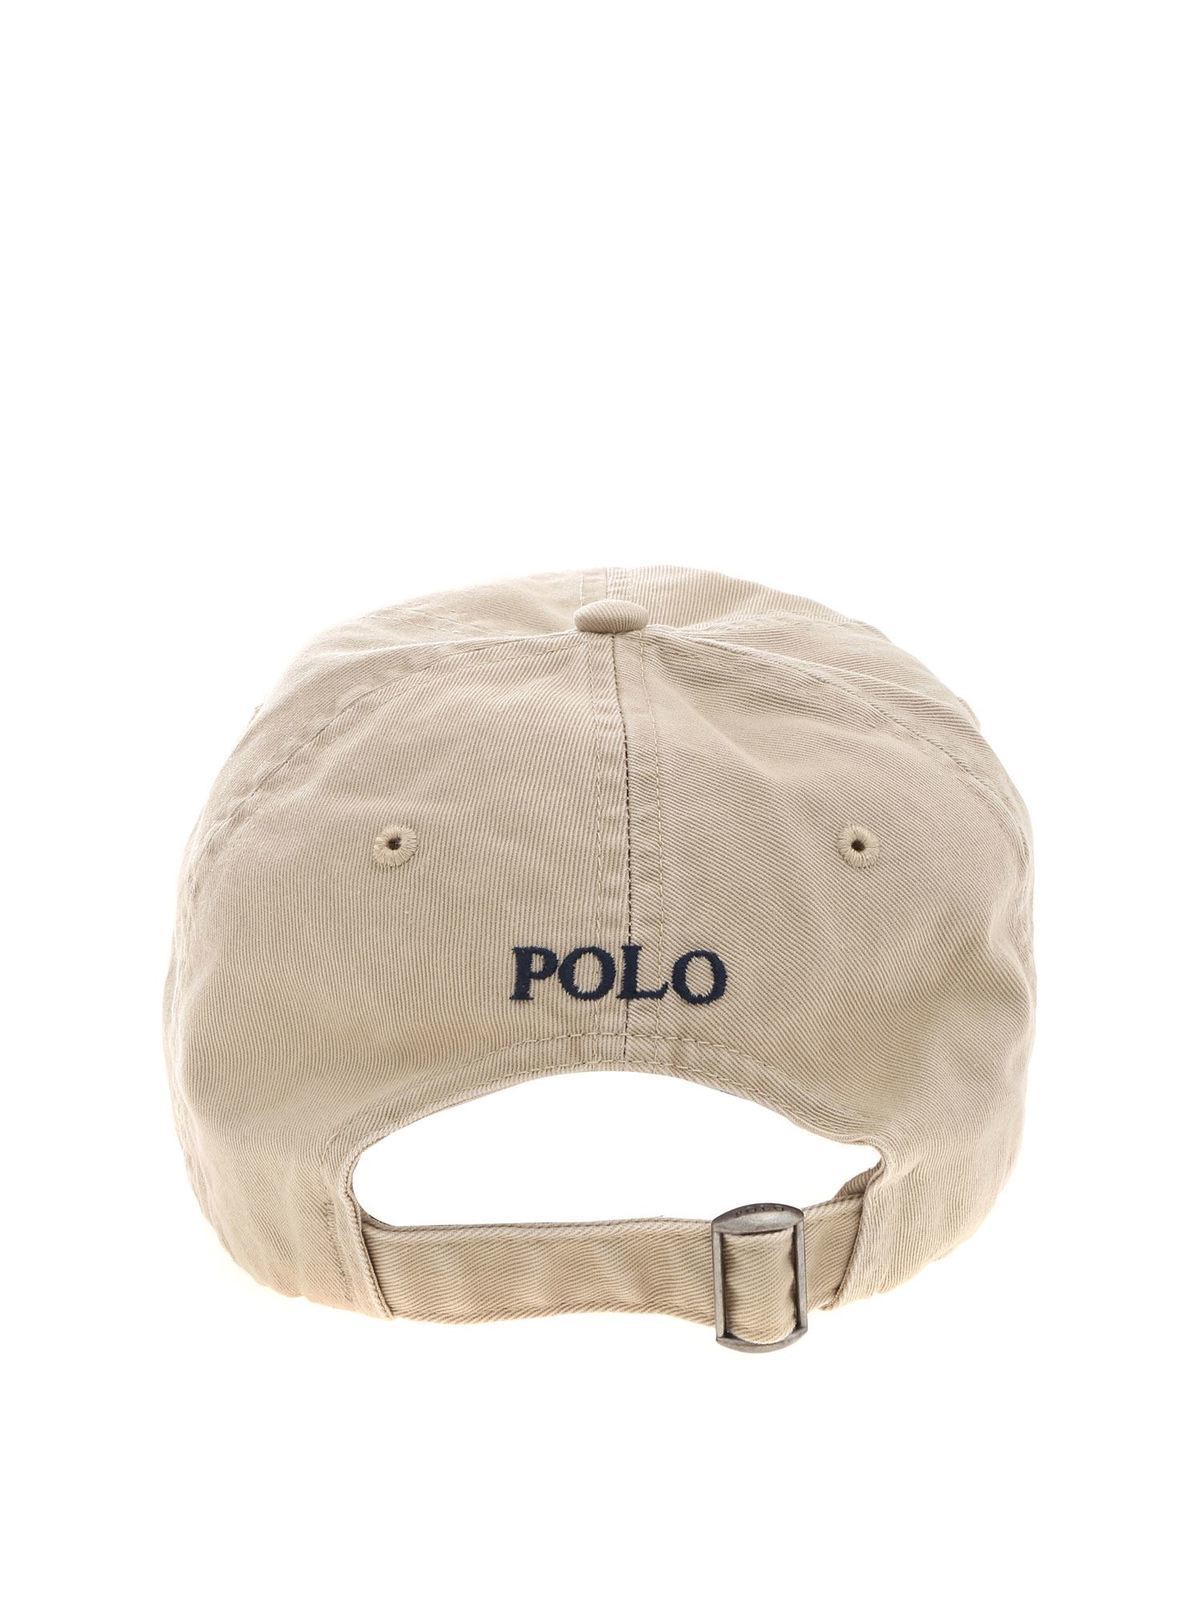 Hats & caps Polo Ralph Lauren - Baseball cap in beige with logo -  710548524005